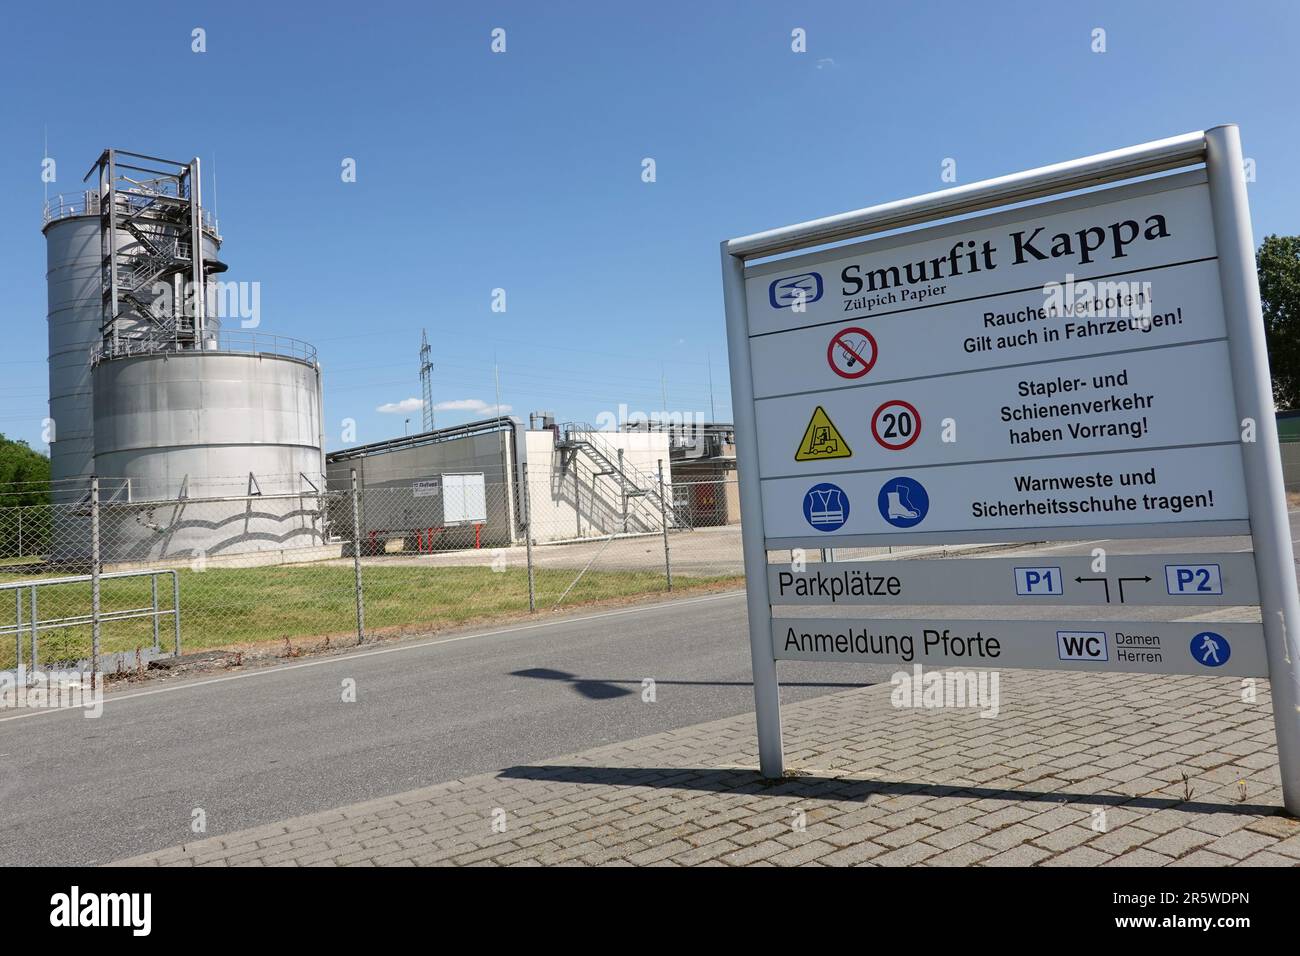 Smurfit Kappa Papierfabrik Zülpich,, im hintergrund die betriebseigene Kläranlage, Nordrhein-Westfalen, Allemagne Banque D'Images